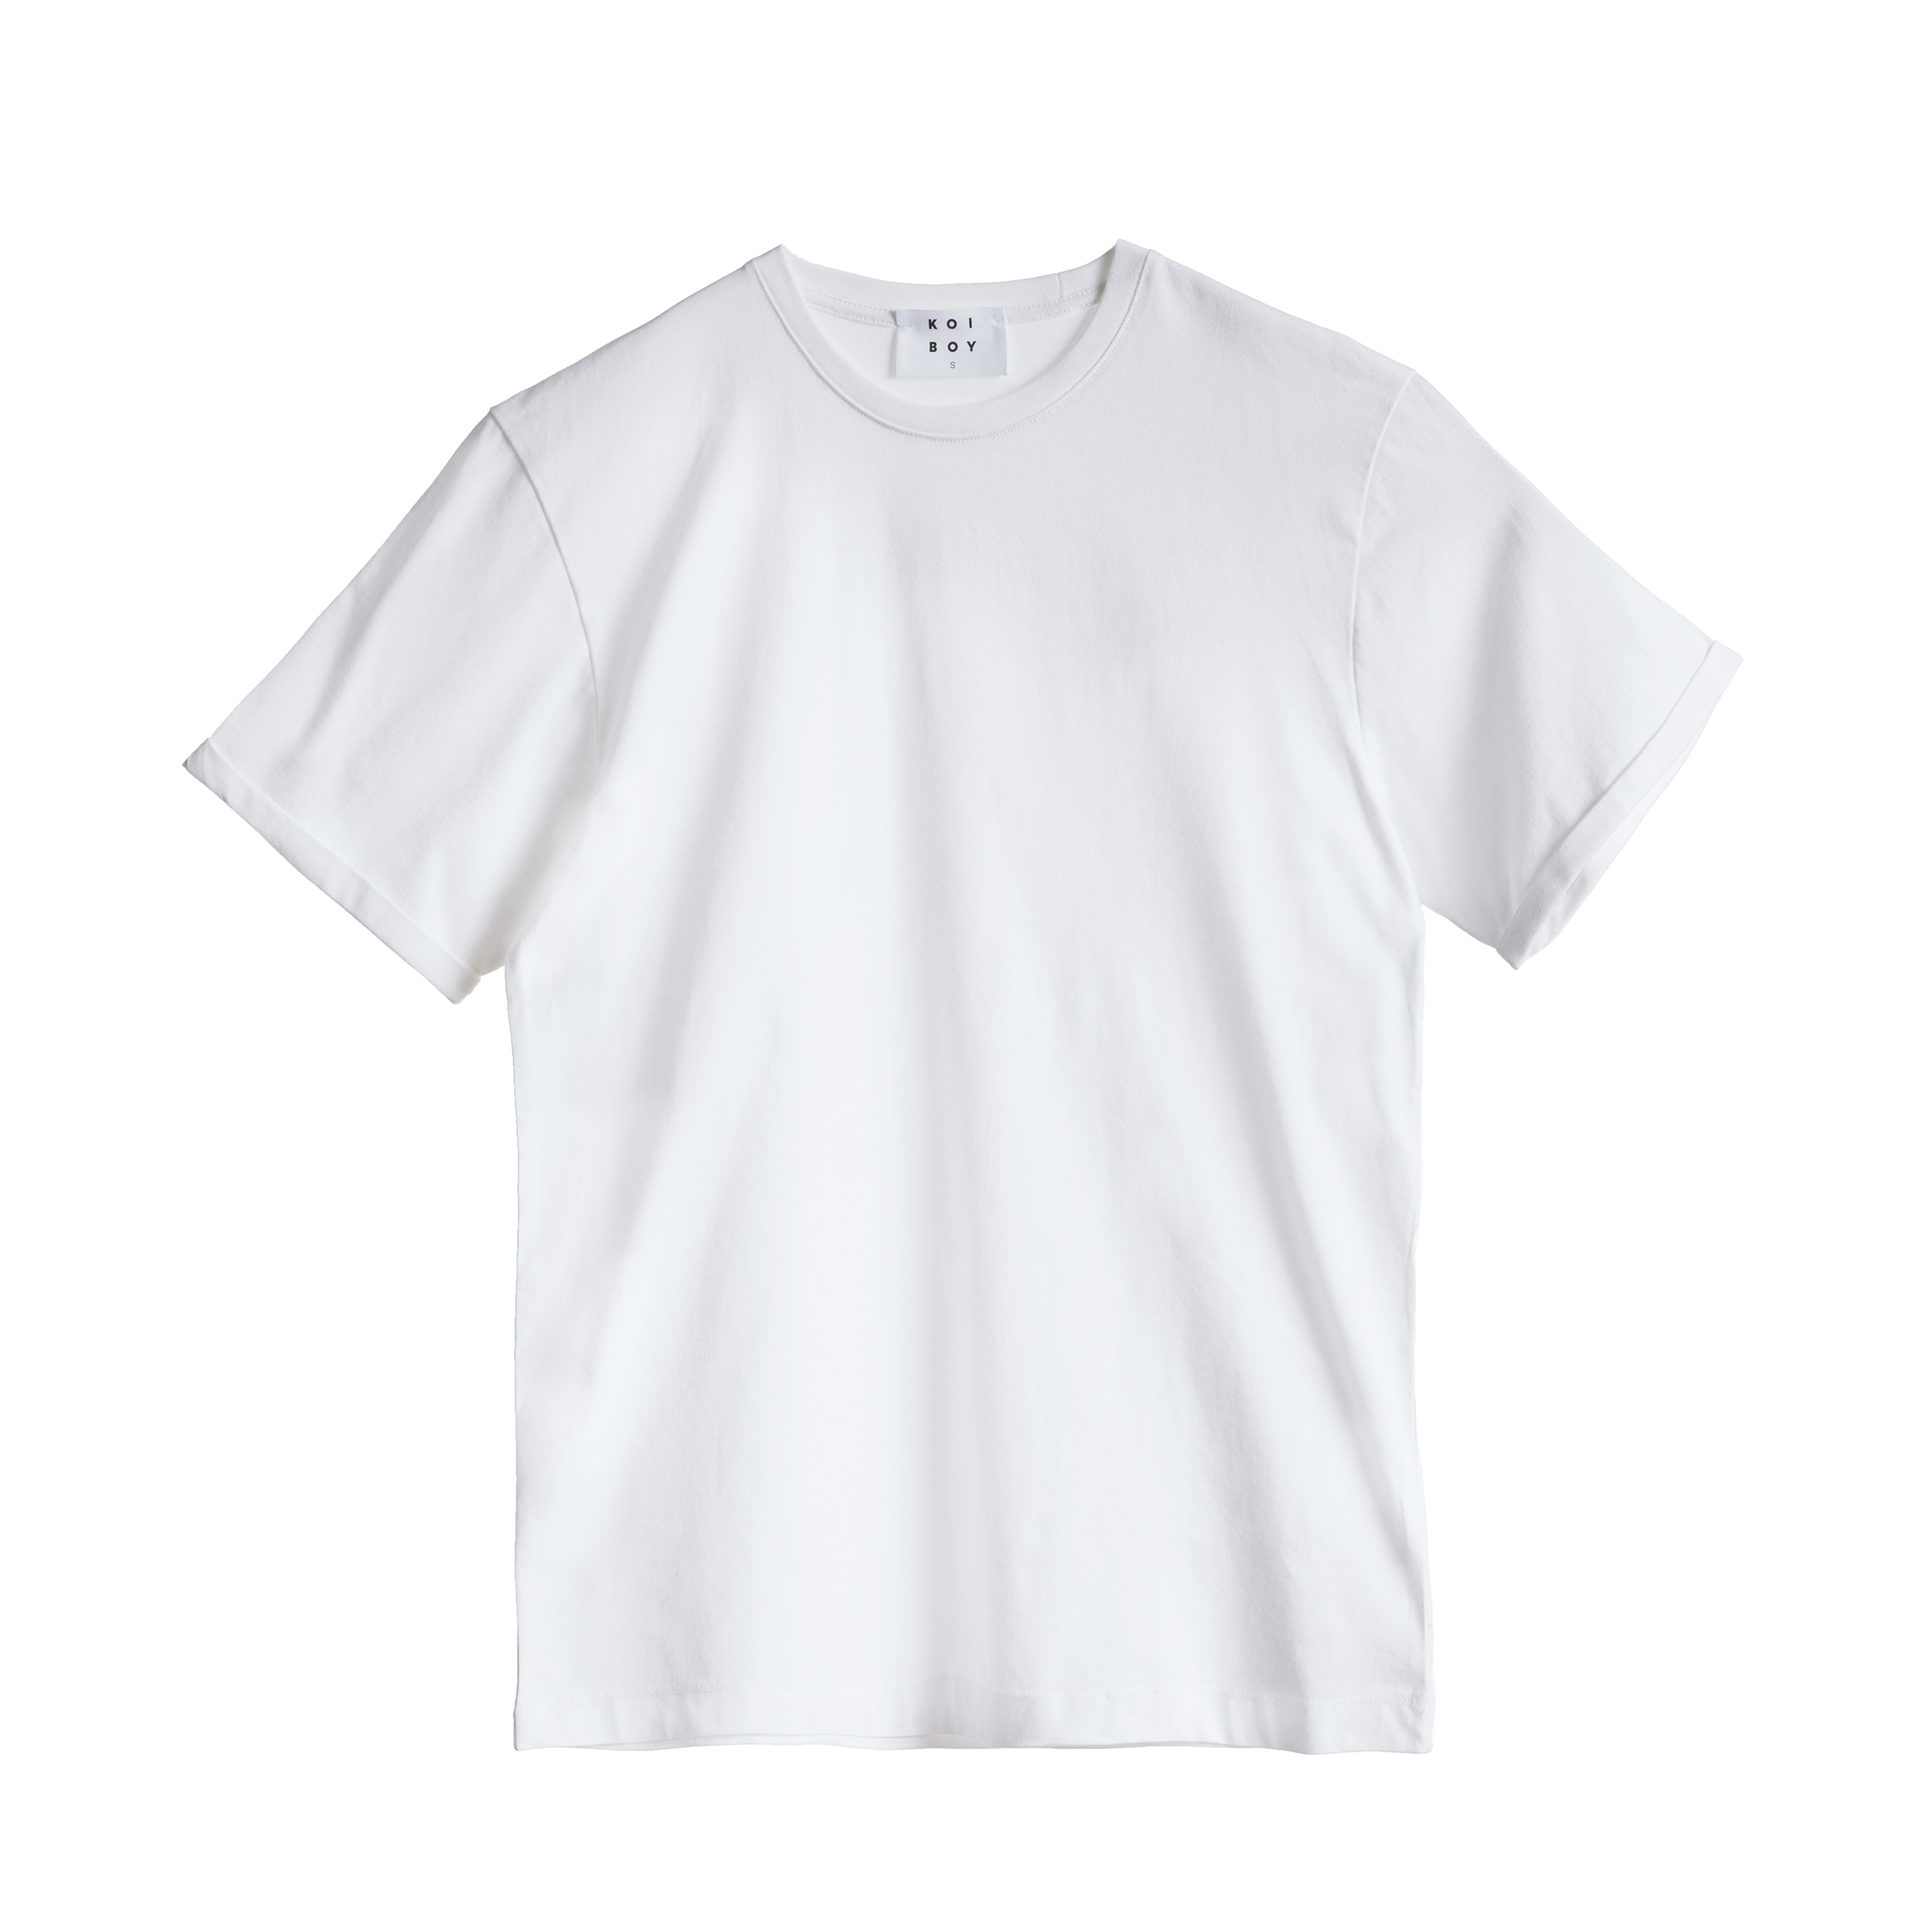 نکته خرید - قیمت روز تی شرت آستین کوتاه مردانه کوی مدل 432 اسلیم فیت رنگ سفید خرید